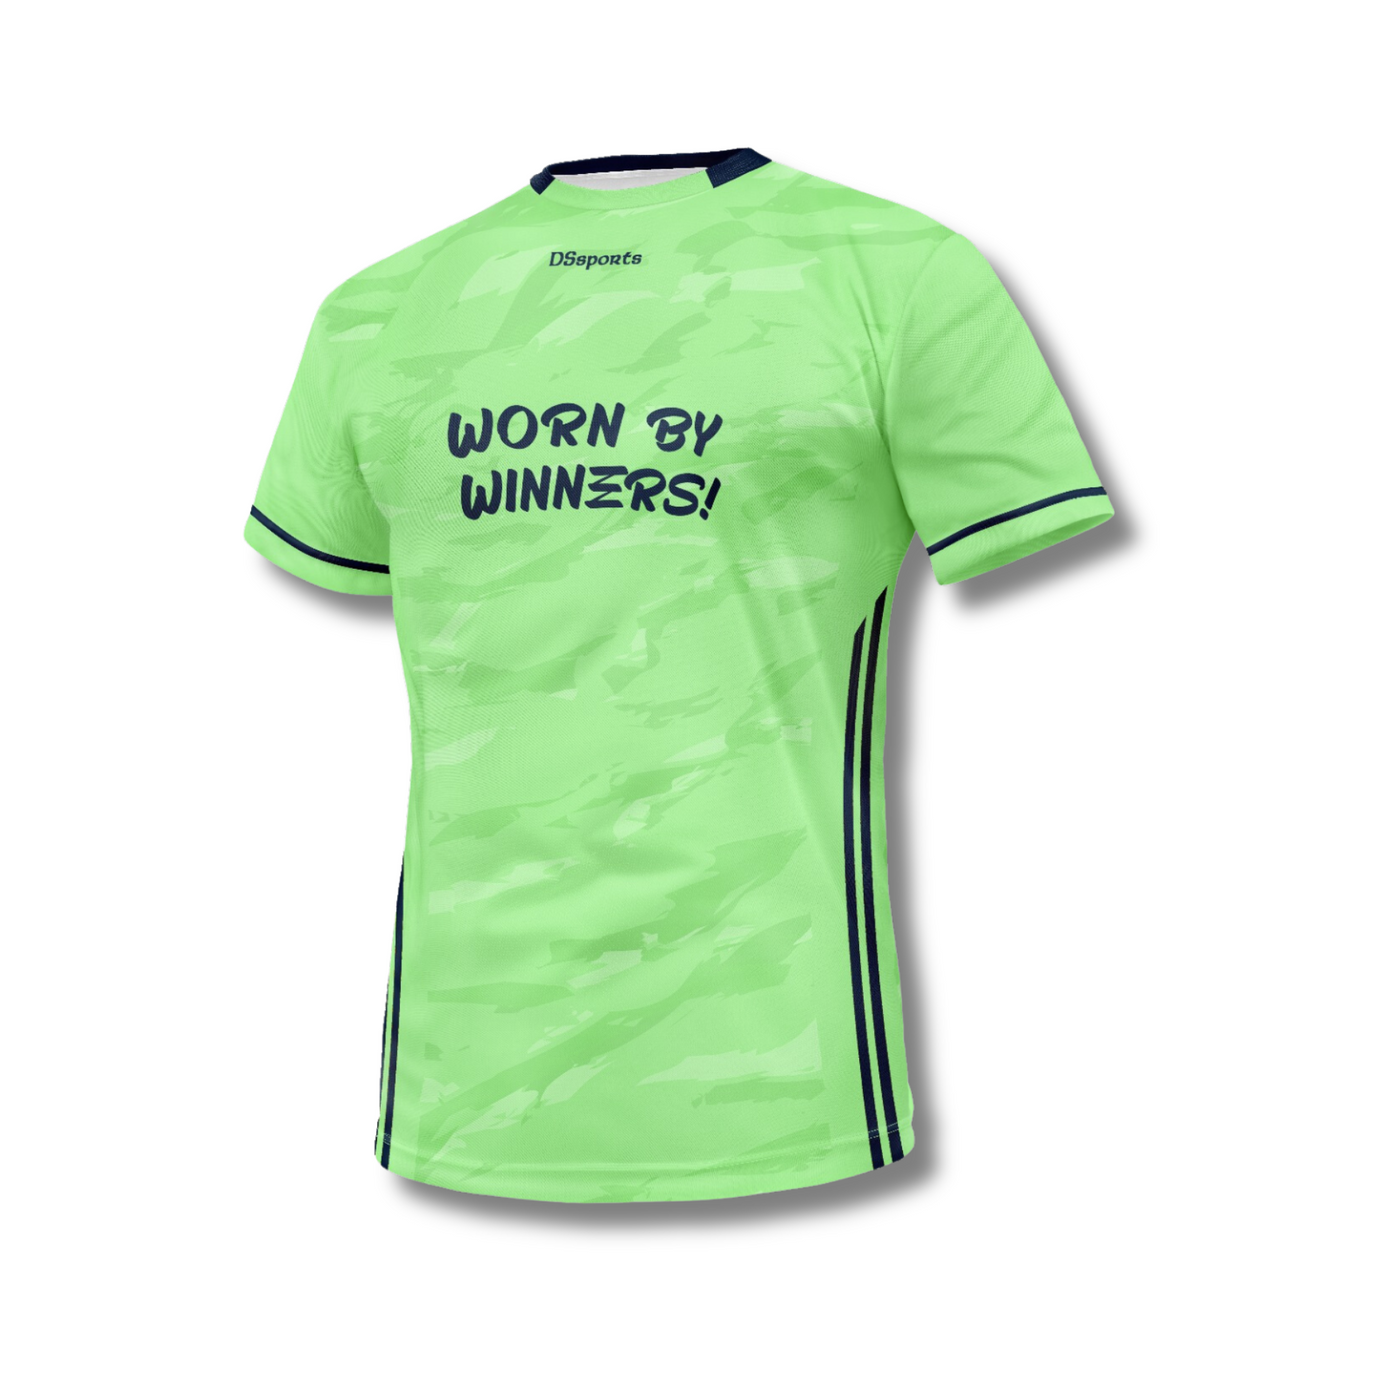 Worn by winners Jersey - Lime